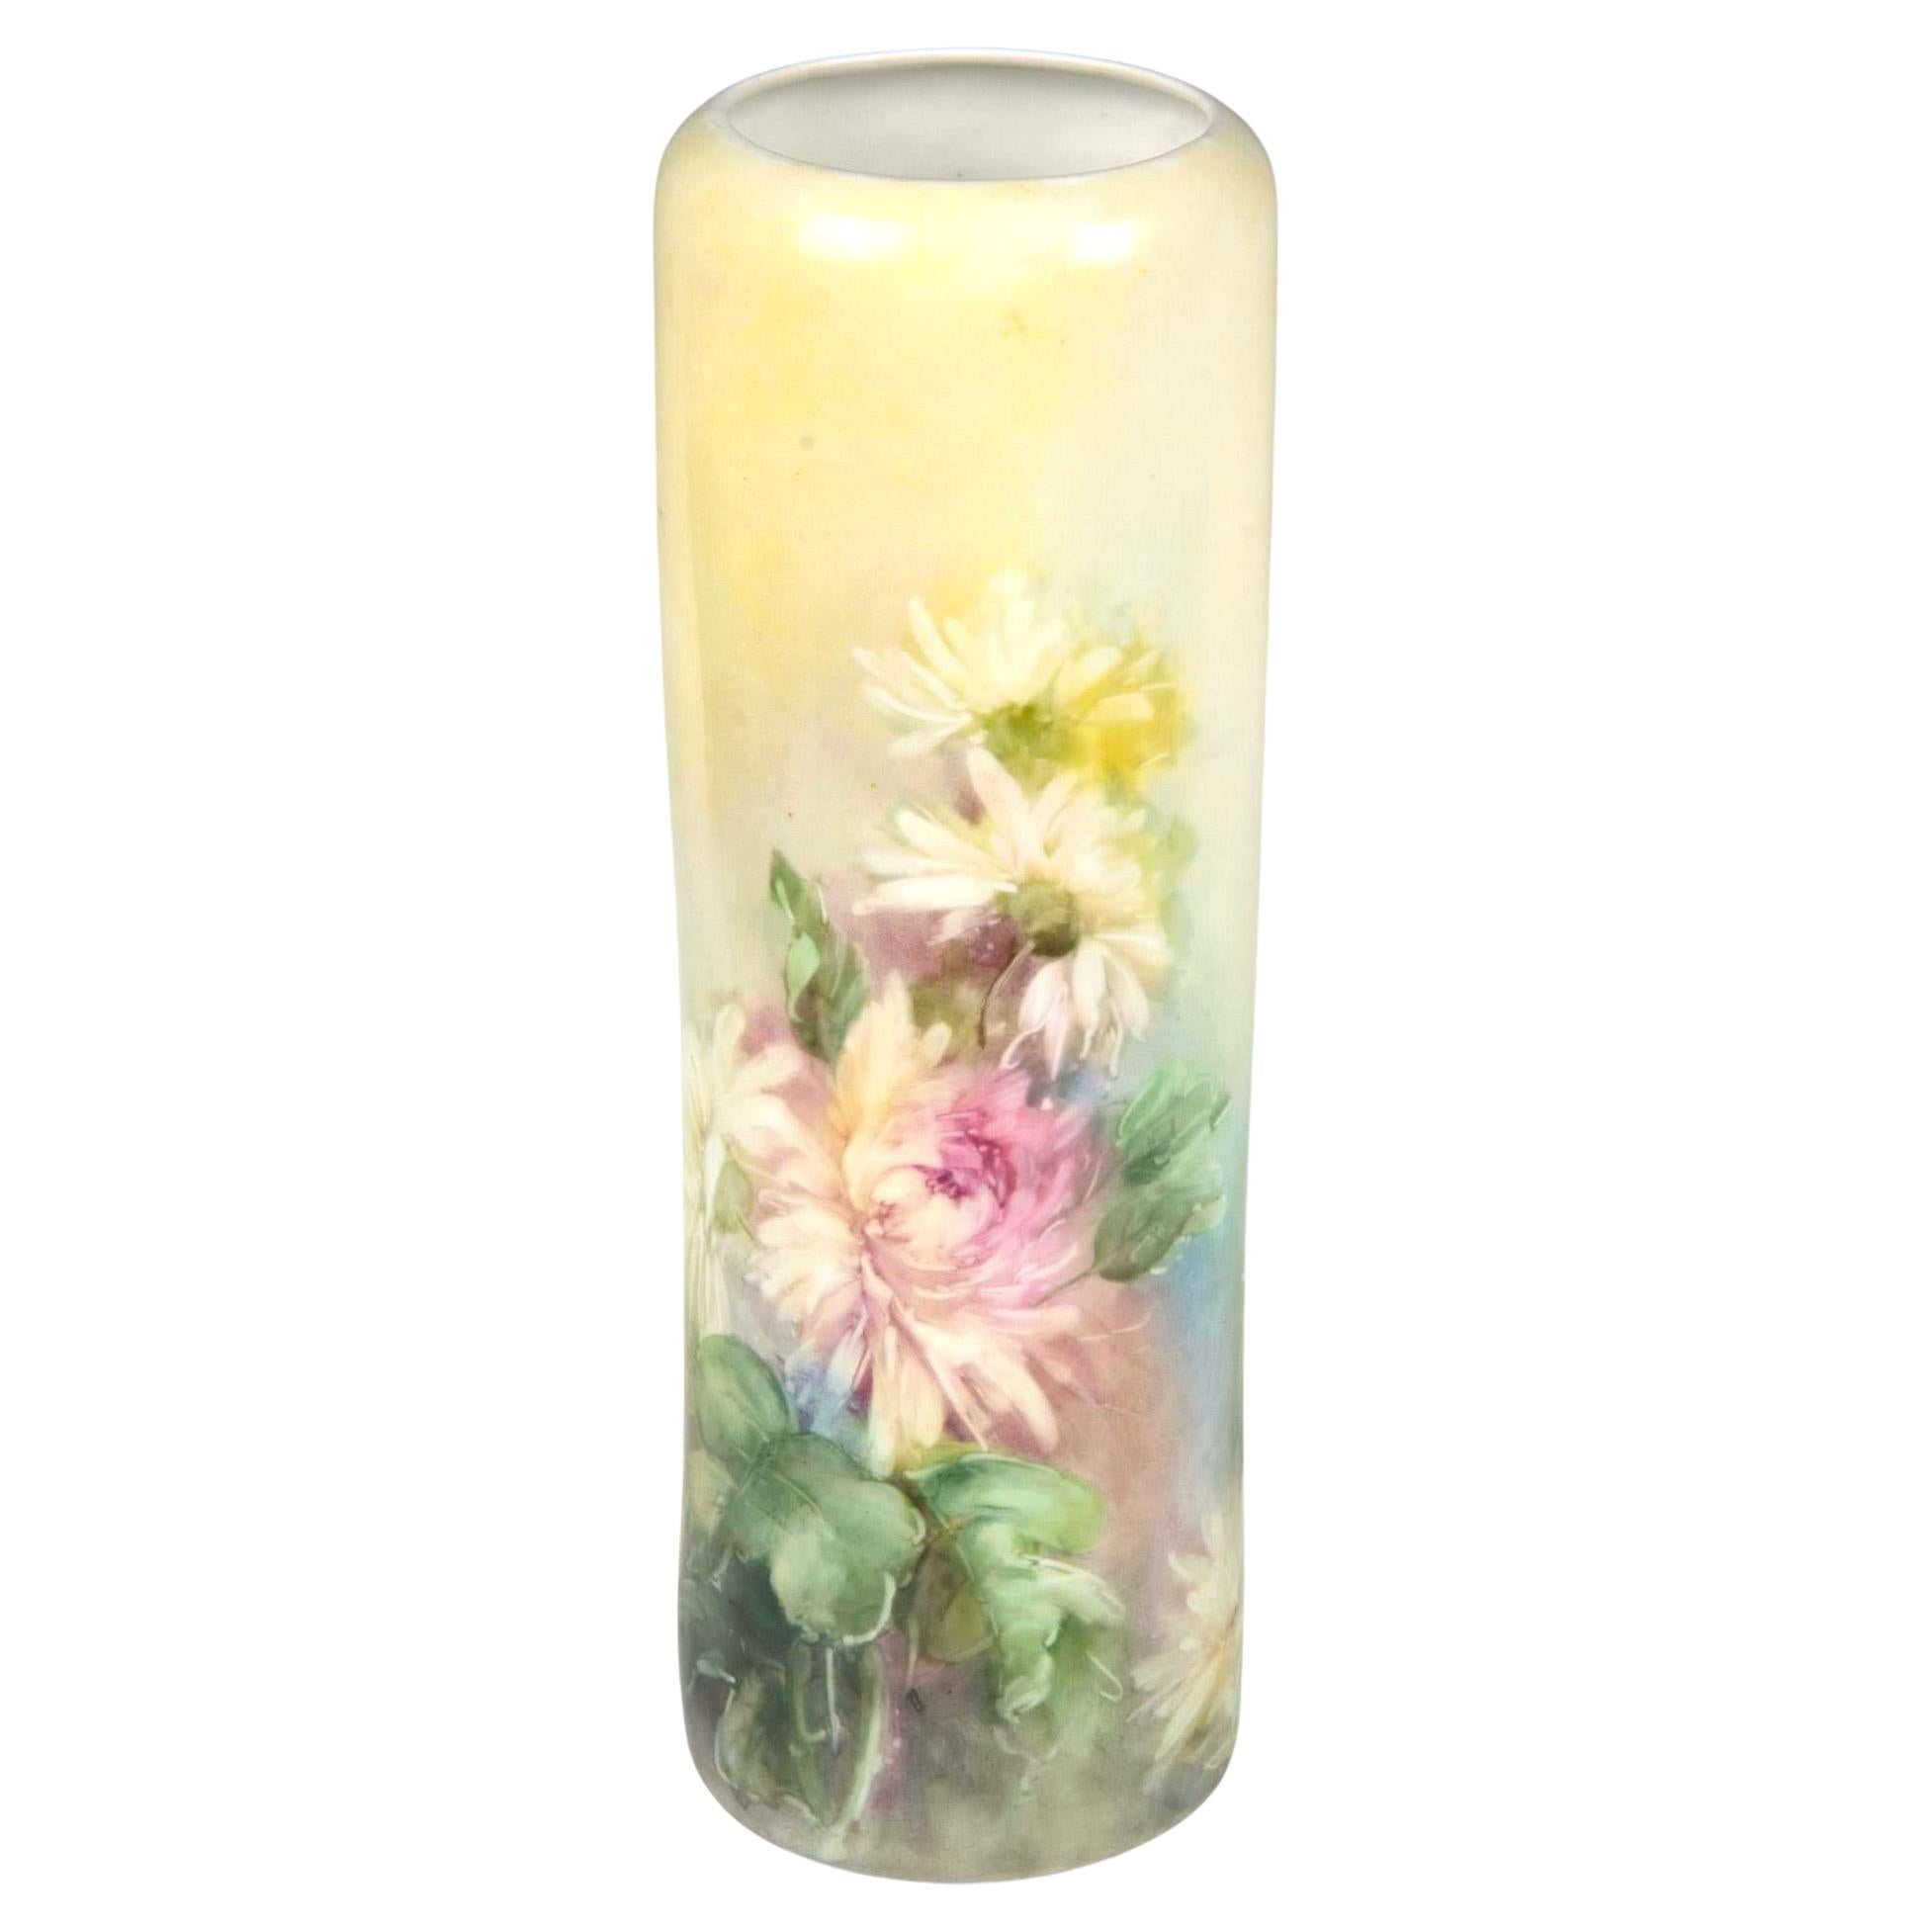 Voici un exquis vase floral ancien en porcelaine peinte à la main provenant de Vienne, Autriche, fabriqué par la célèbre société PH Leonard Co. Ce superbe vase présente un magnifique arrangement de motifs floraux et feuillus, avec des chrysanthèmes